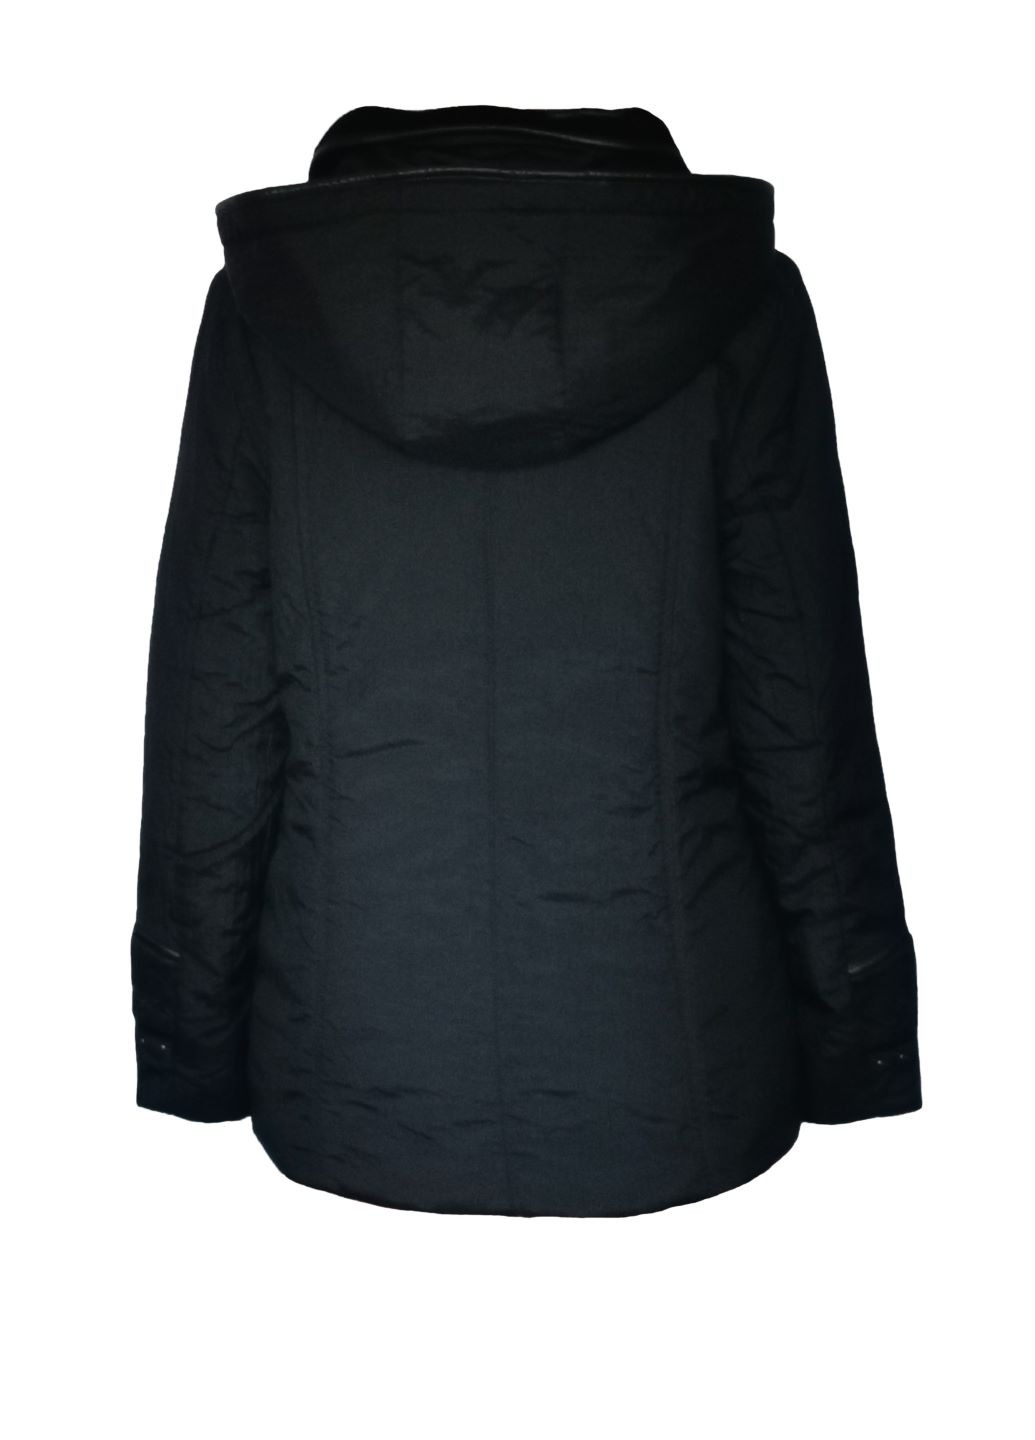 Черная демисезонная куртка демисезонная женская с капюшоном черный размер 44 Mirage